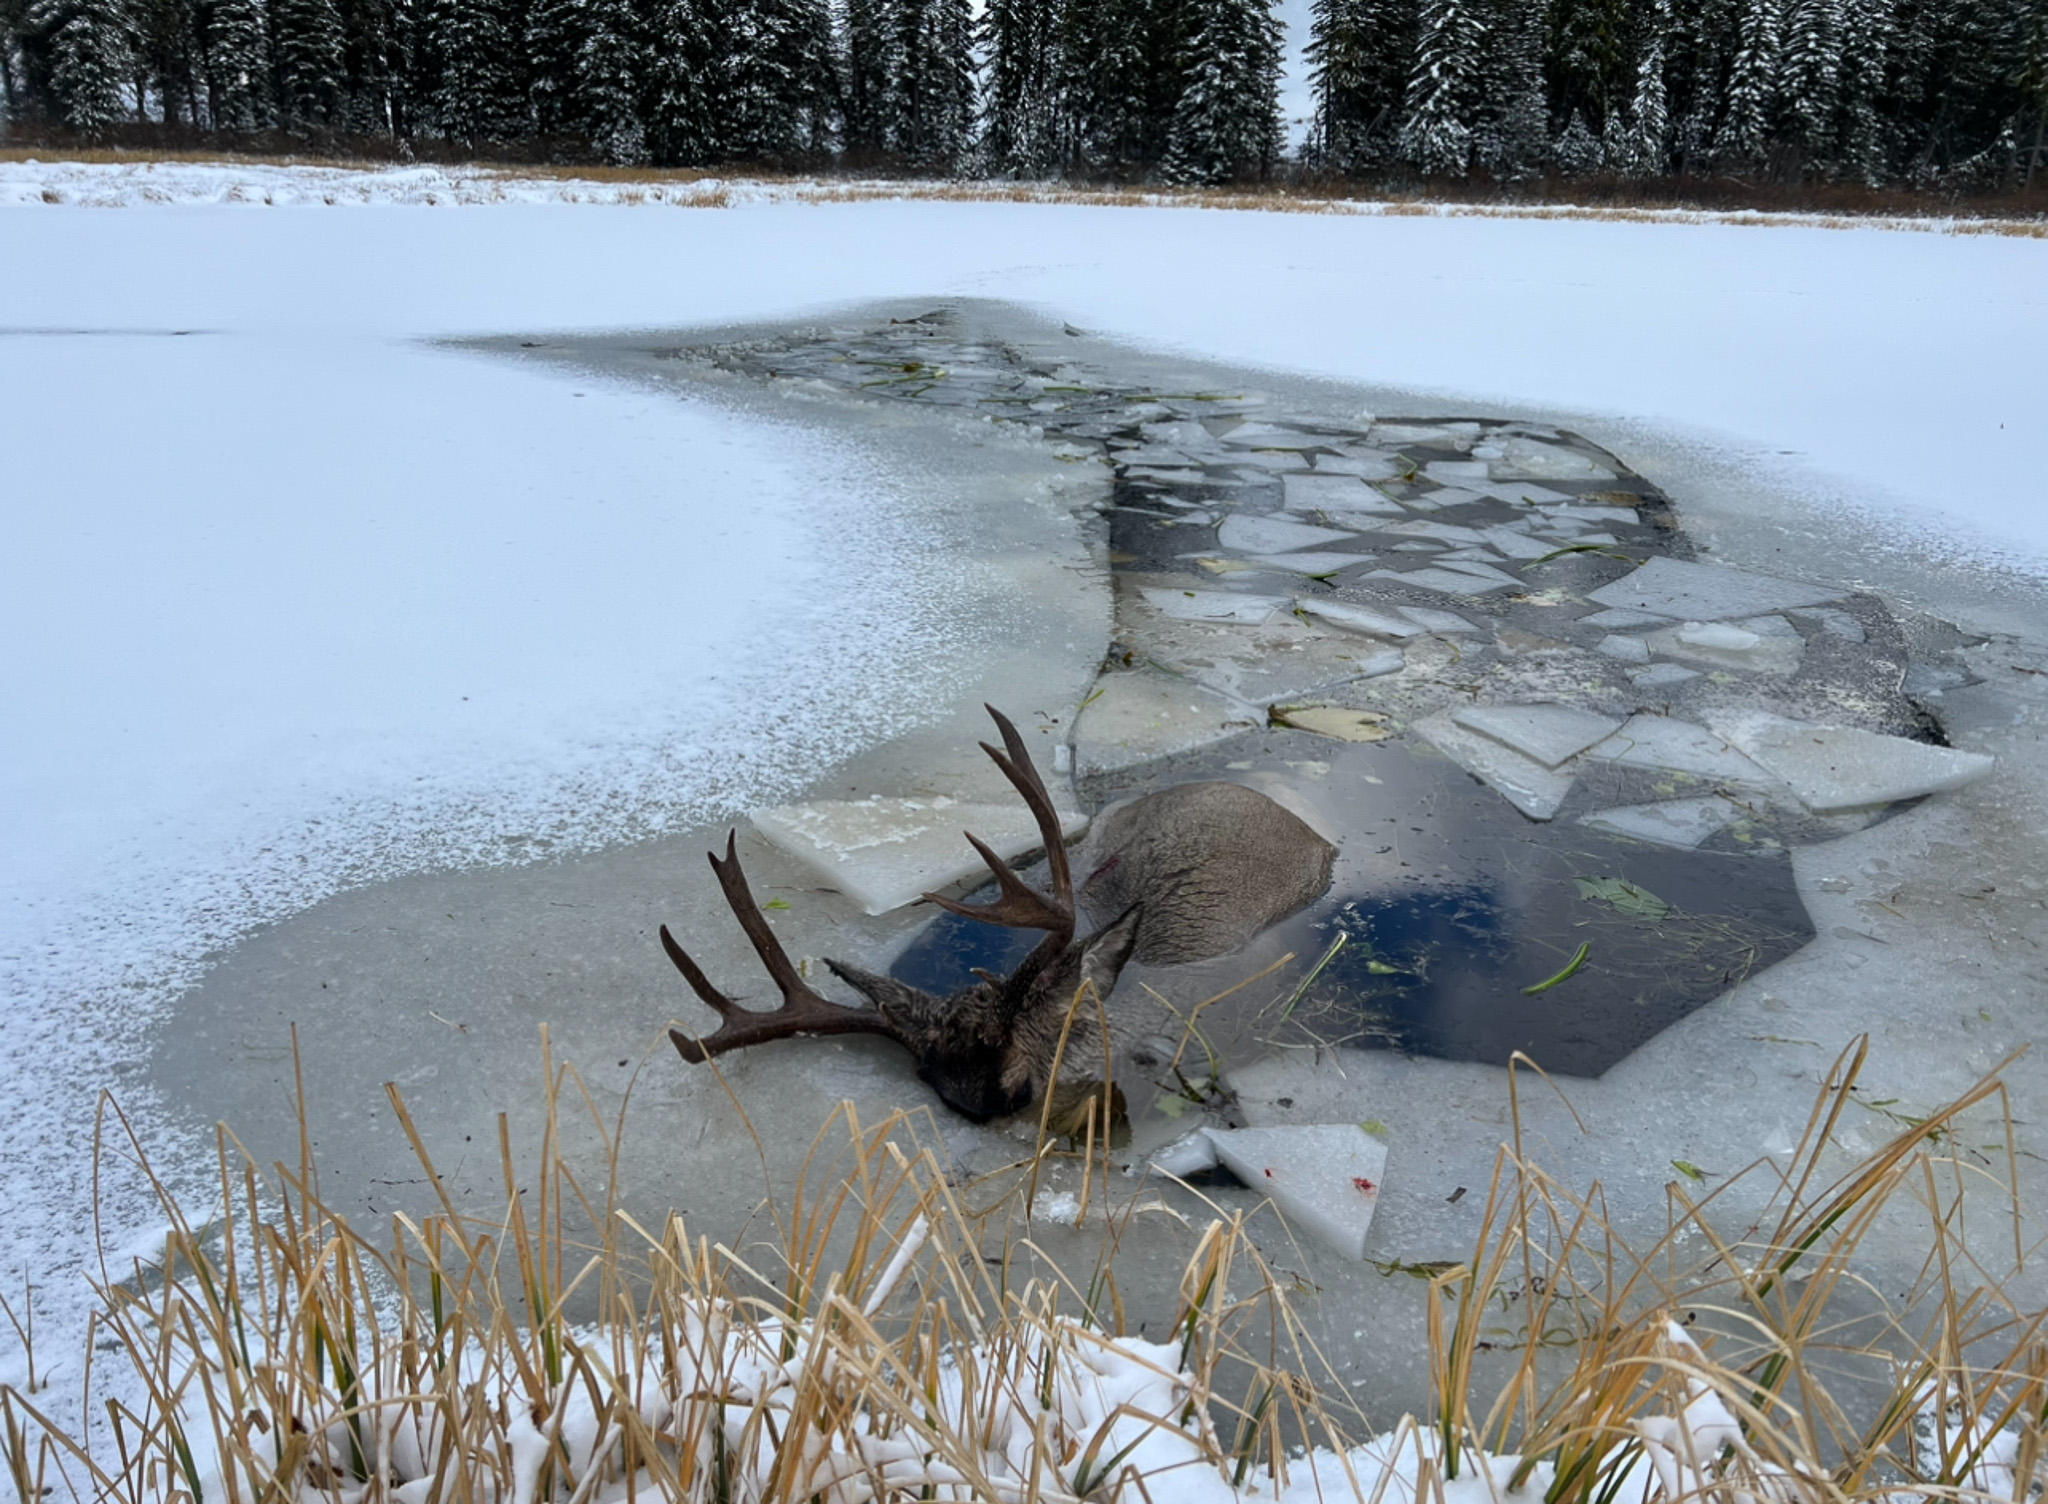 A buck lies half-submerged in half-frozen water.